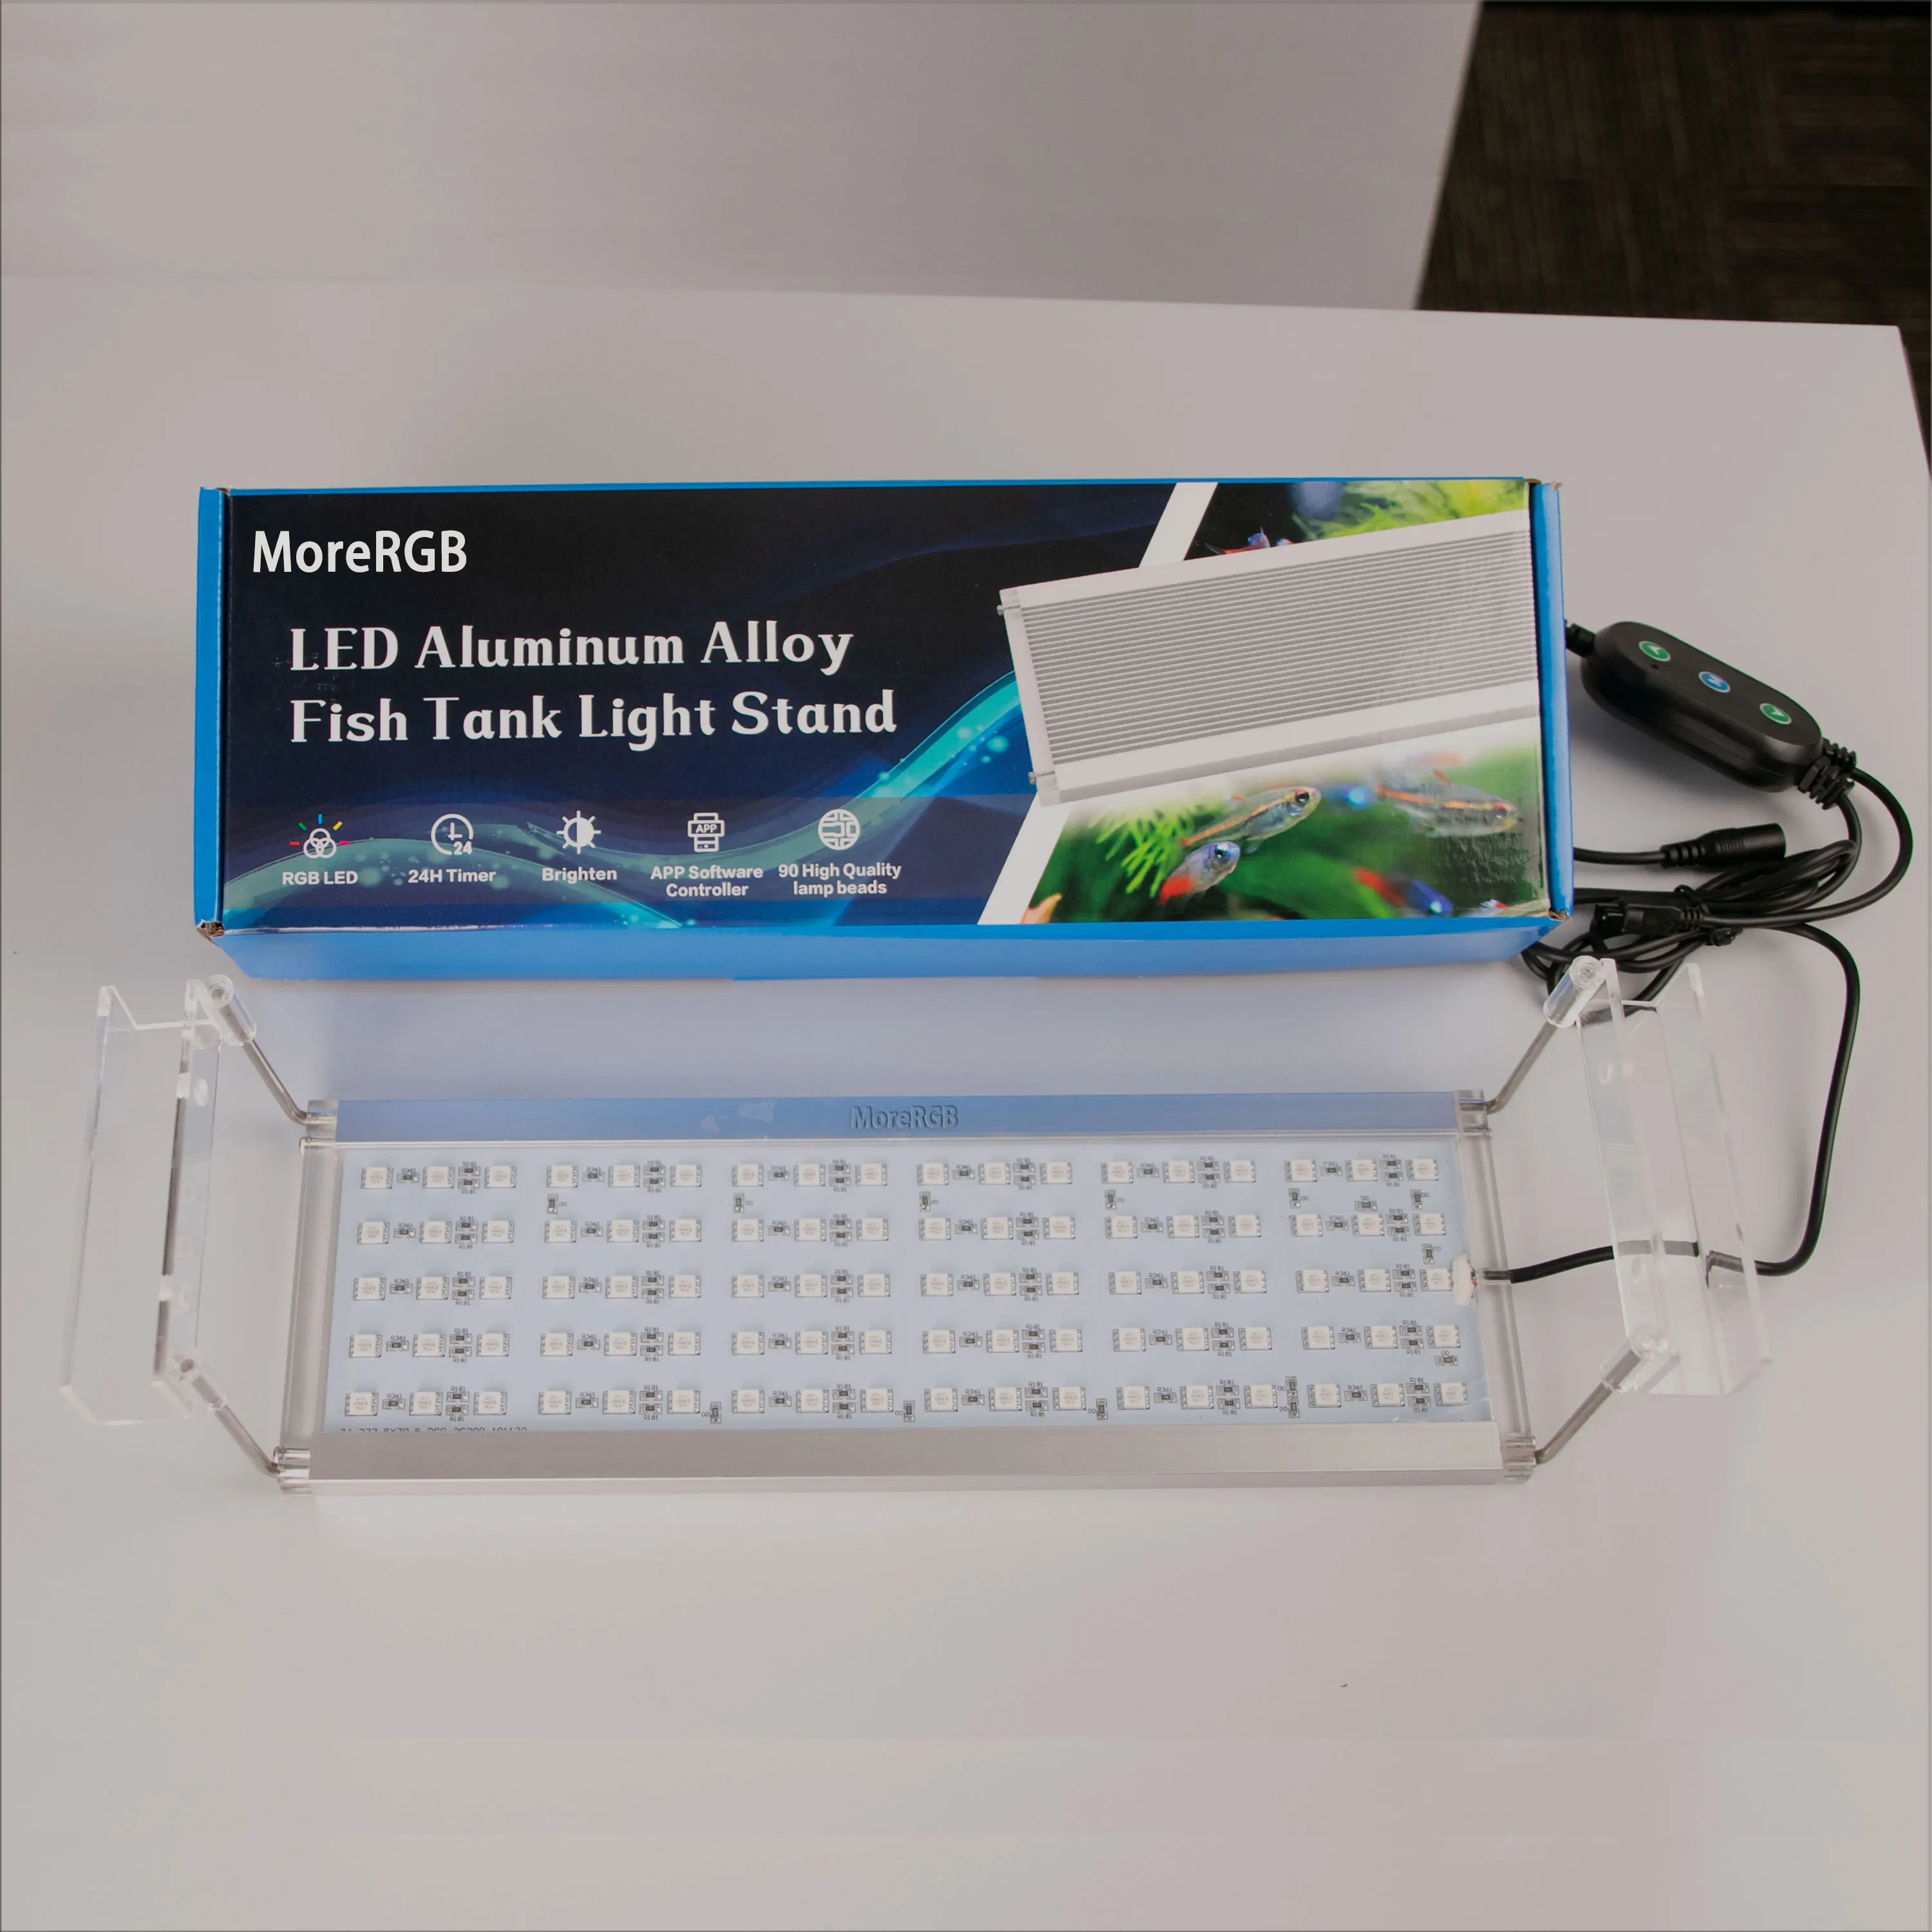 저렴한 MoreRGB 100CM 수족관 Led 조명 수족관 물고기 탱크 램프 타이머 기능 스탠드 수족관 램프 식물 꽃 해양